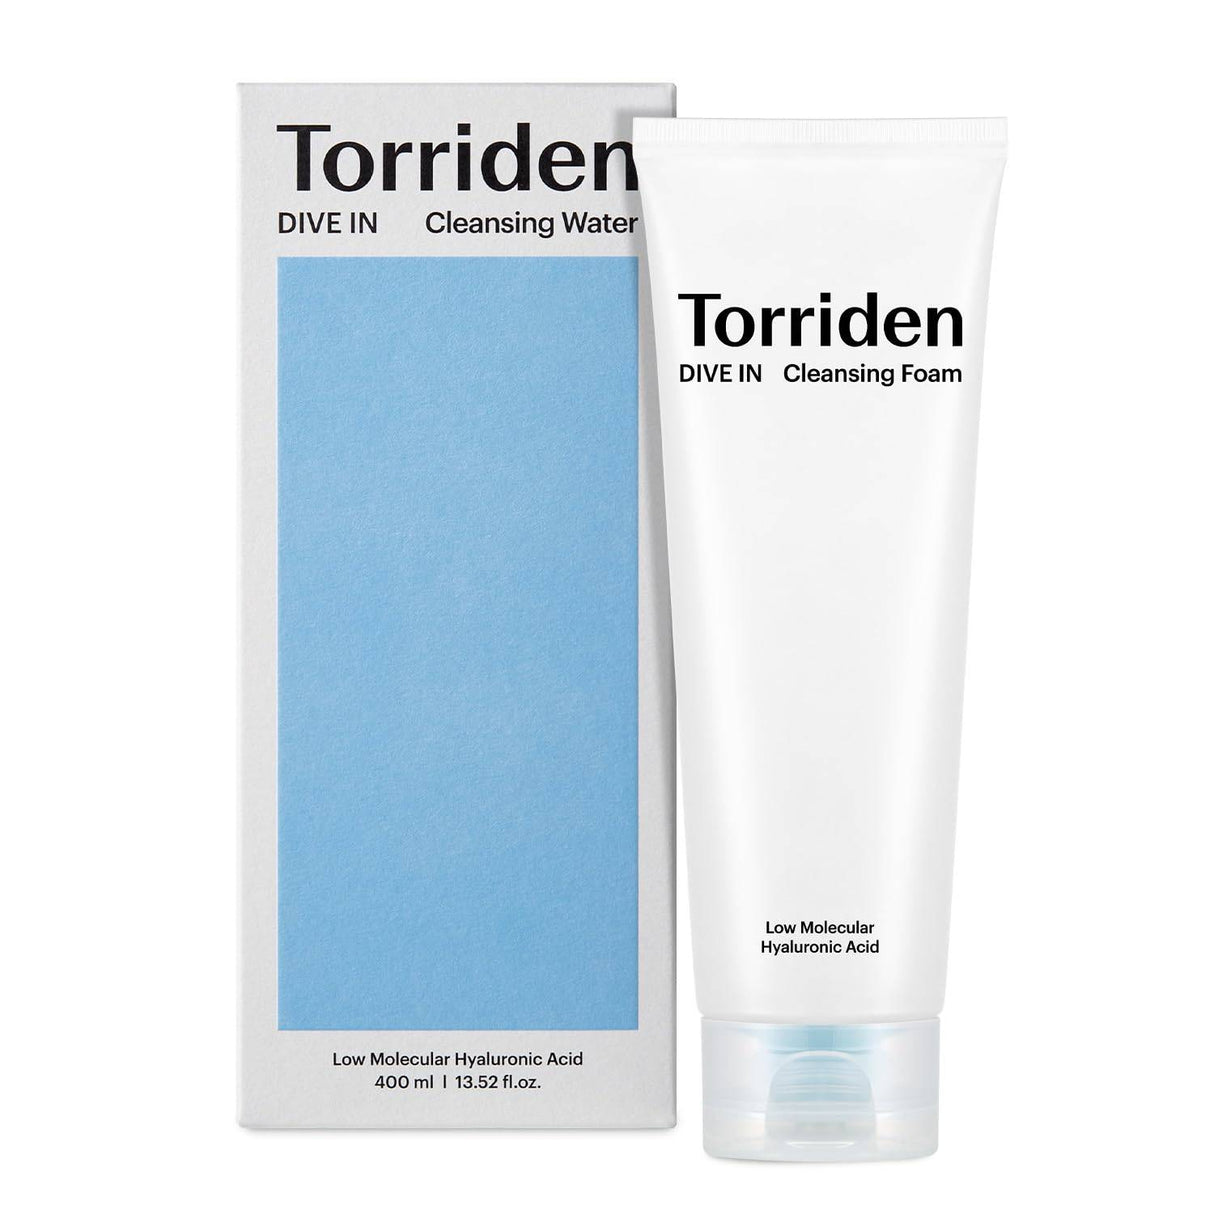 Torriden DIVE-IN Low Molecular Hyaluronic Acid puhdistusvaahto 150ml